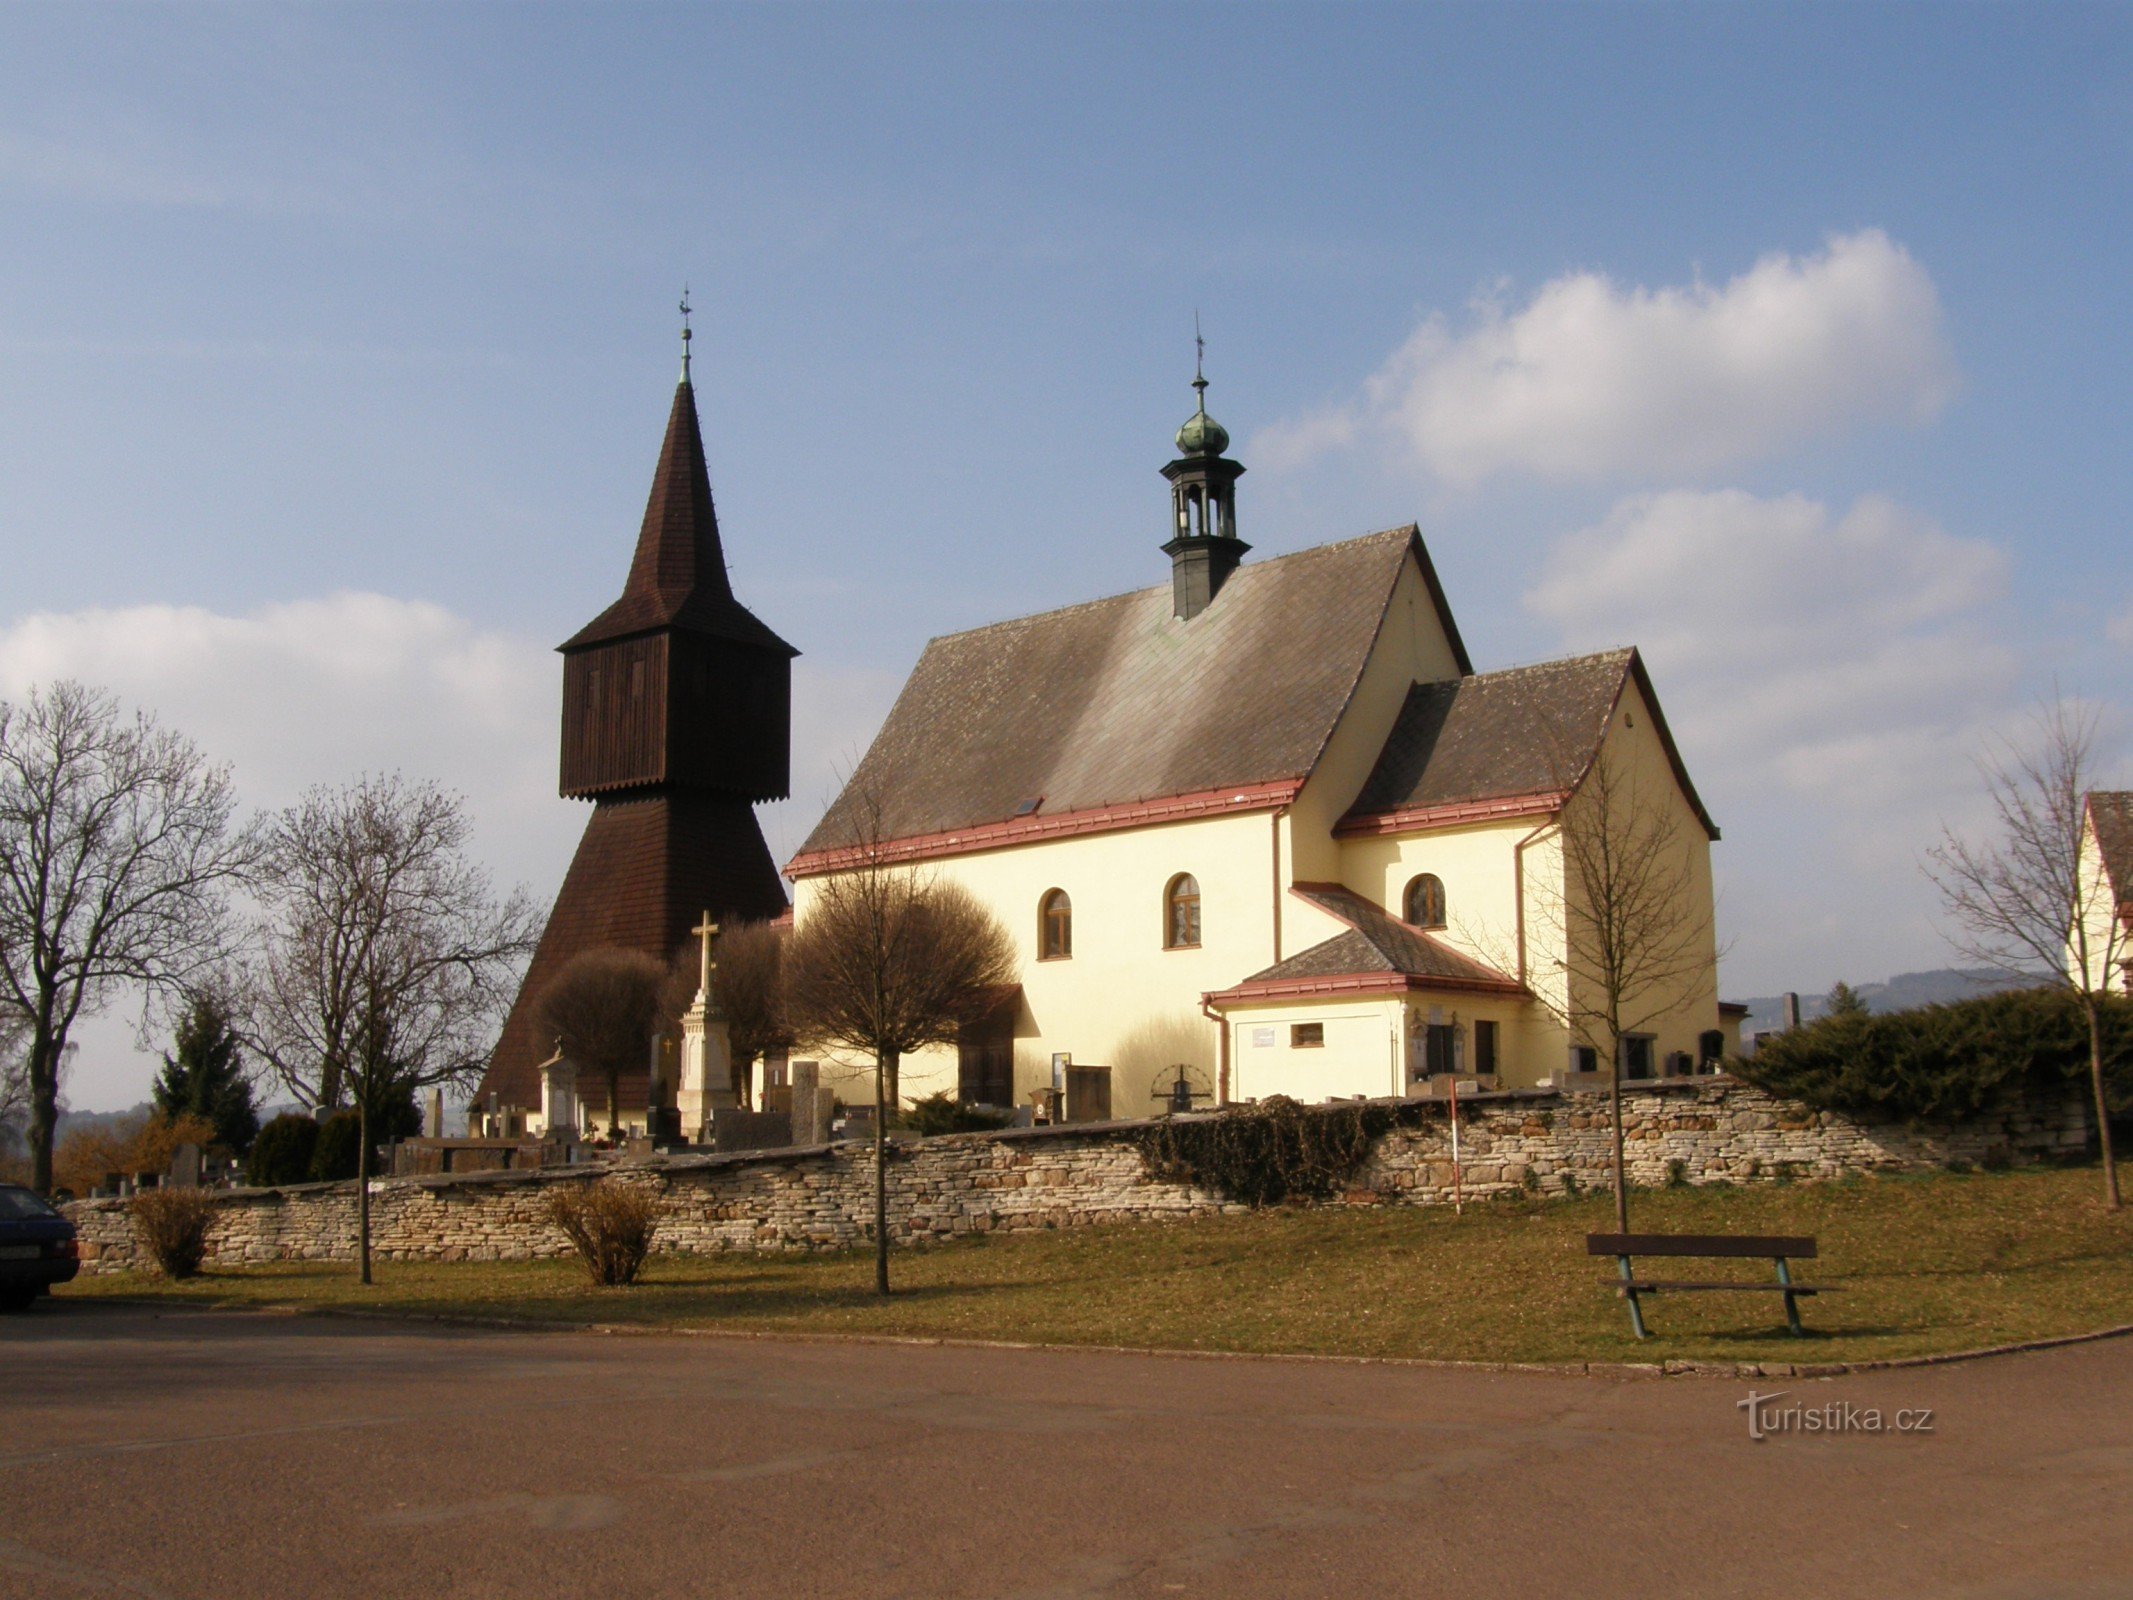 Rtyně em Podkrkonoší - igreja e campanário